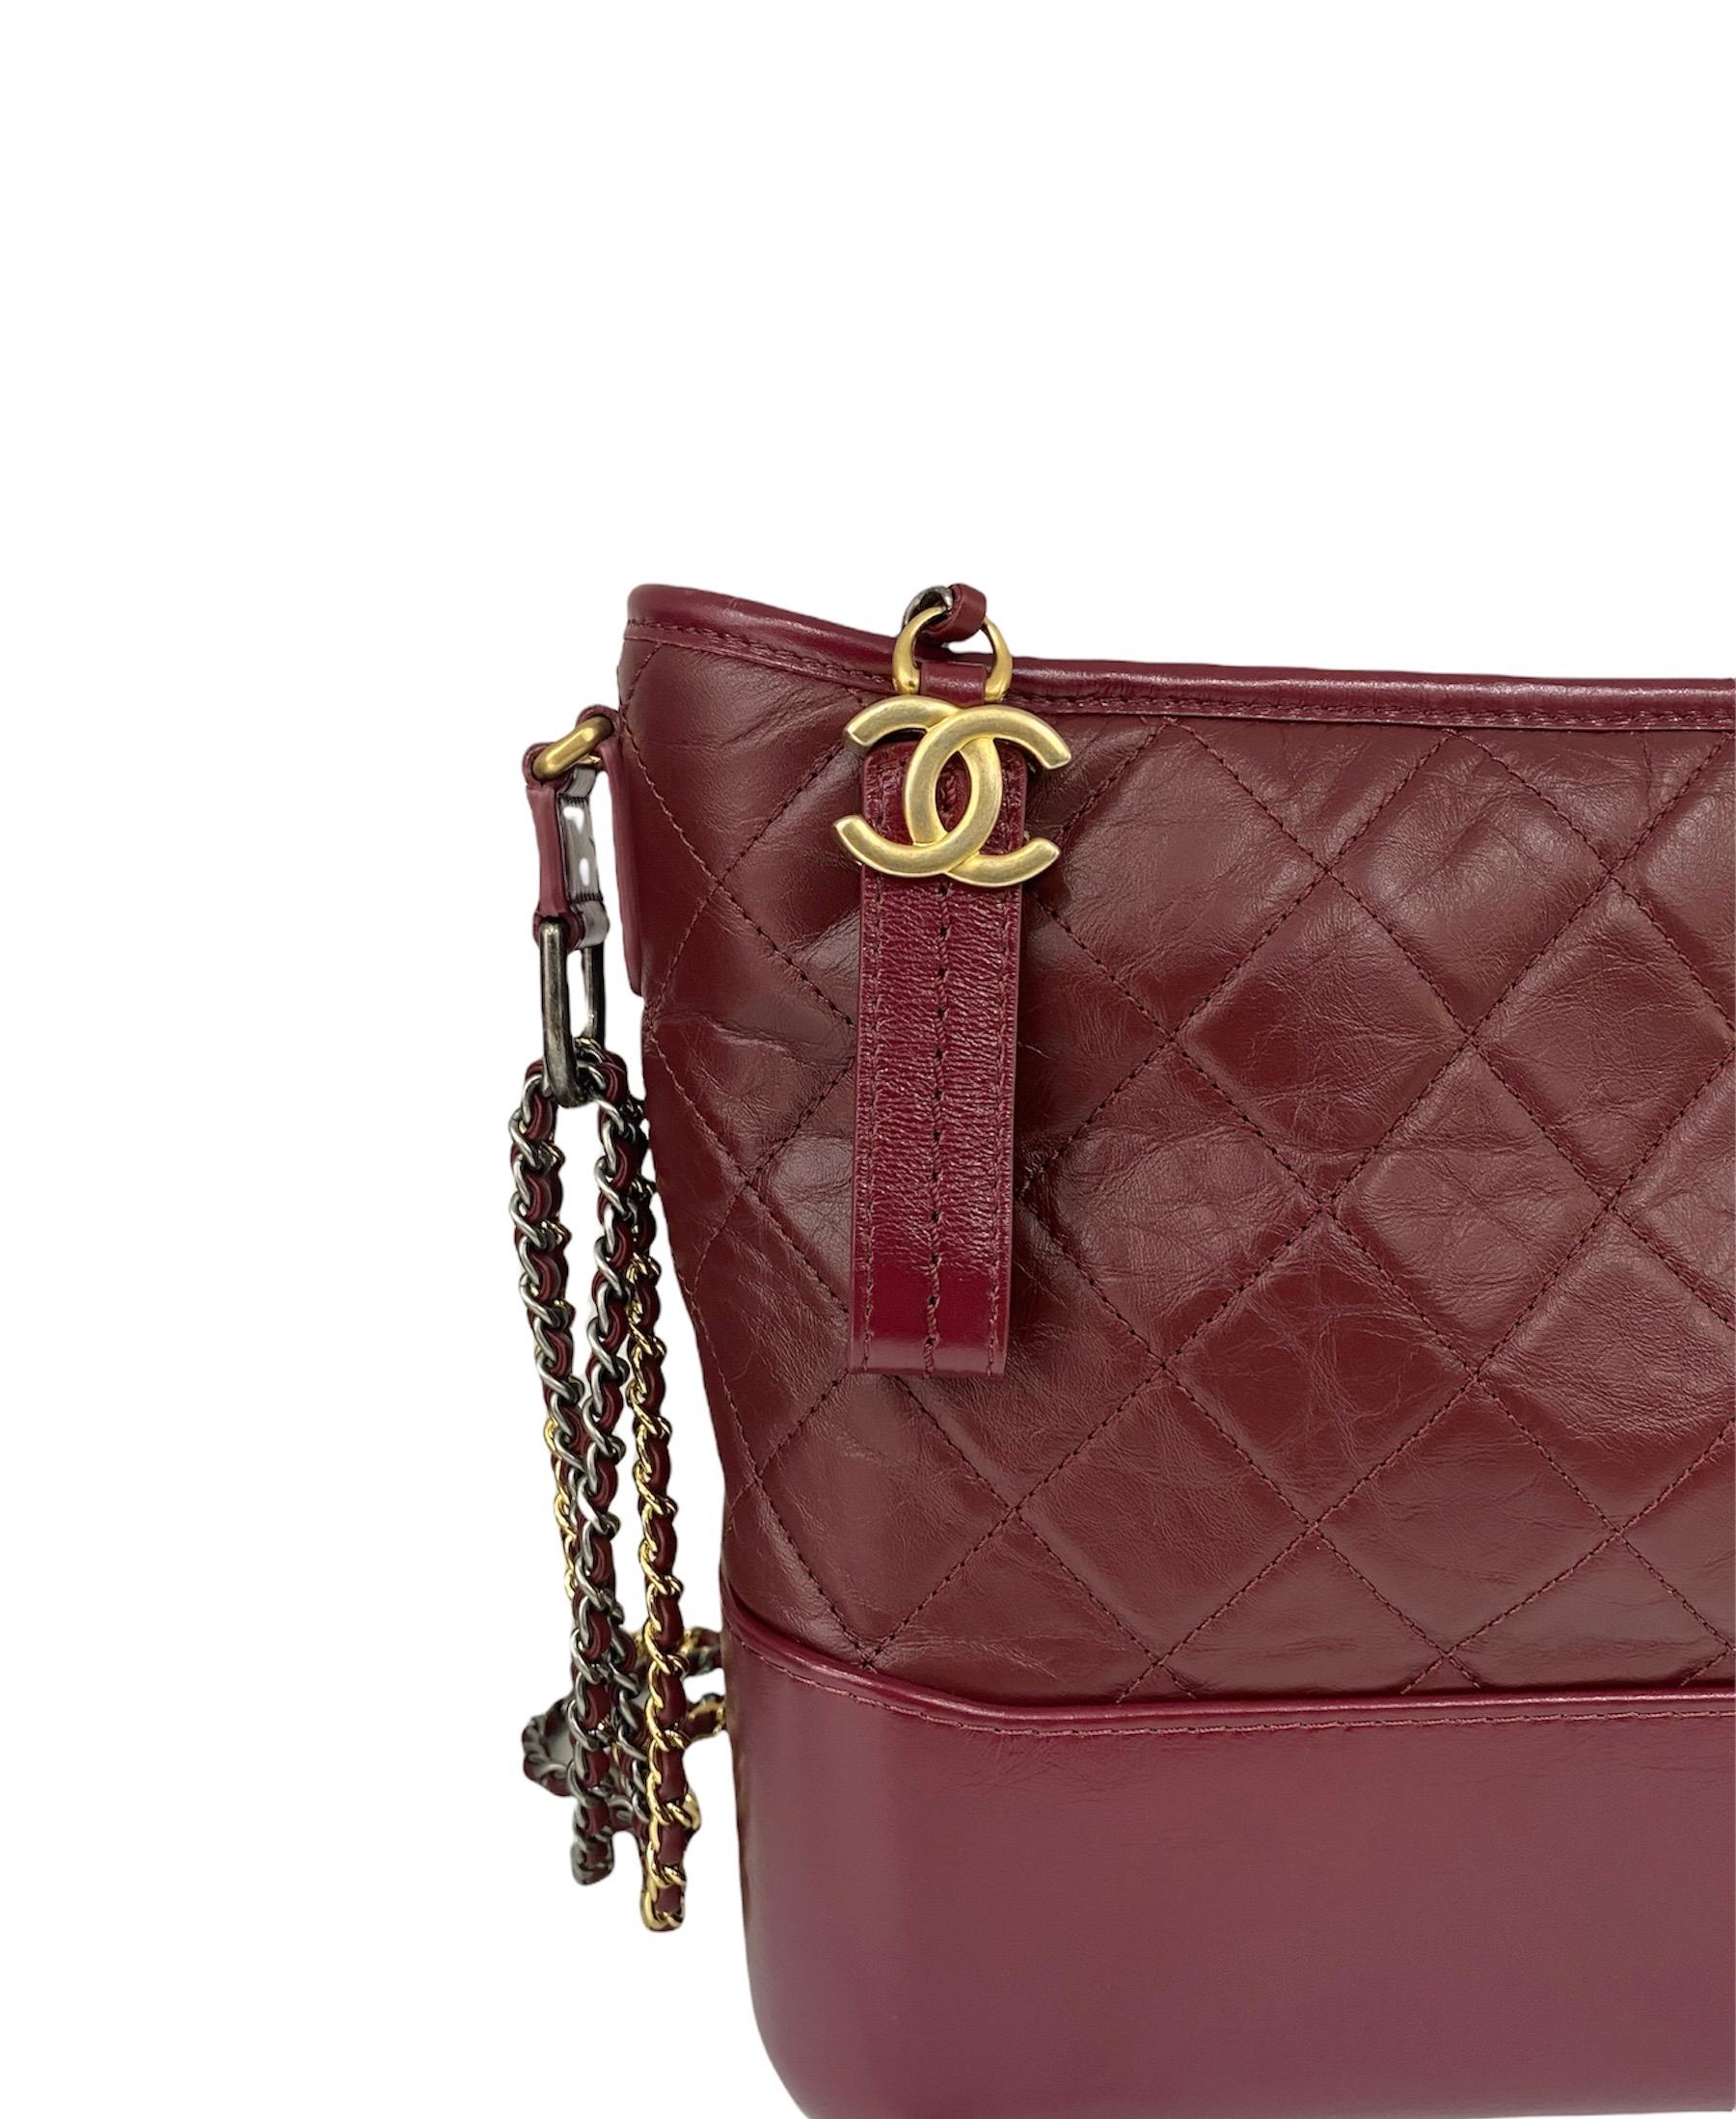 Fabuleux sac de Chanel, modèle Gabrielle, en cuir bordeaux avec des accessoires argentés et dorés. Le sac est doté d'une fermeture à glissière, d'un intérieur spacieux et équipé de poches. La bandoulière coulissante est en cuir et en chaîne. Le sac